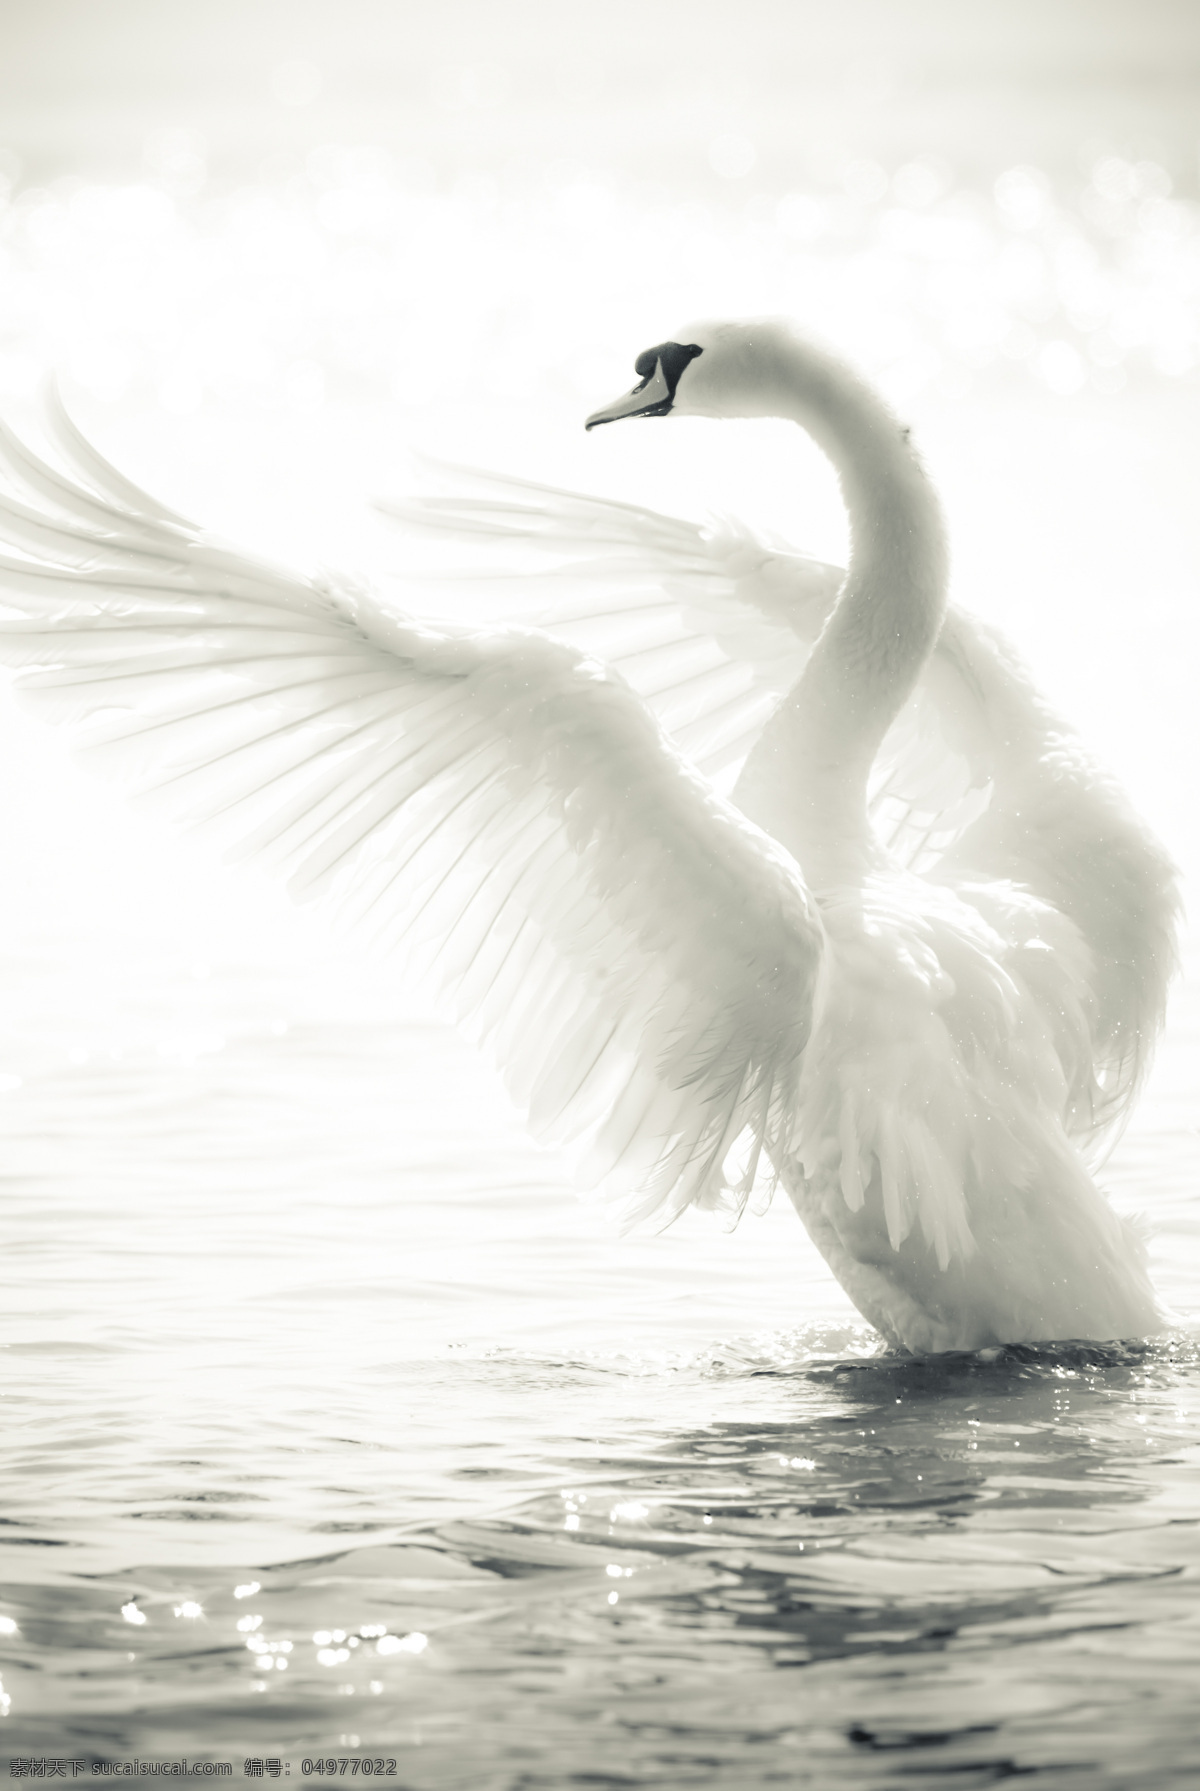 展开 翅膀 天鹅 白天鹅 展开翅膀 野生动物 动物世界 美丽 摄影图 高清图片 水中生物 生物世界